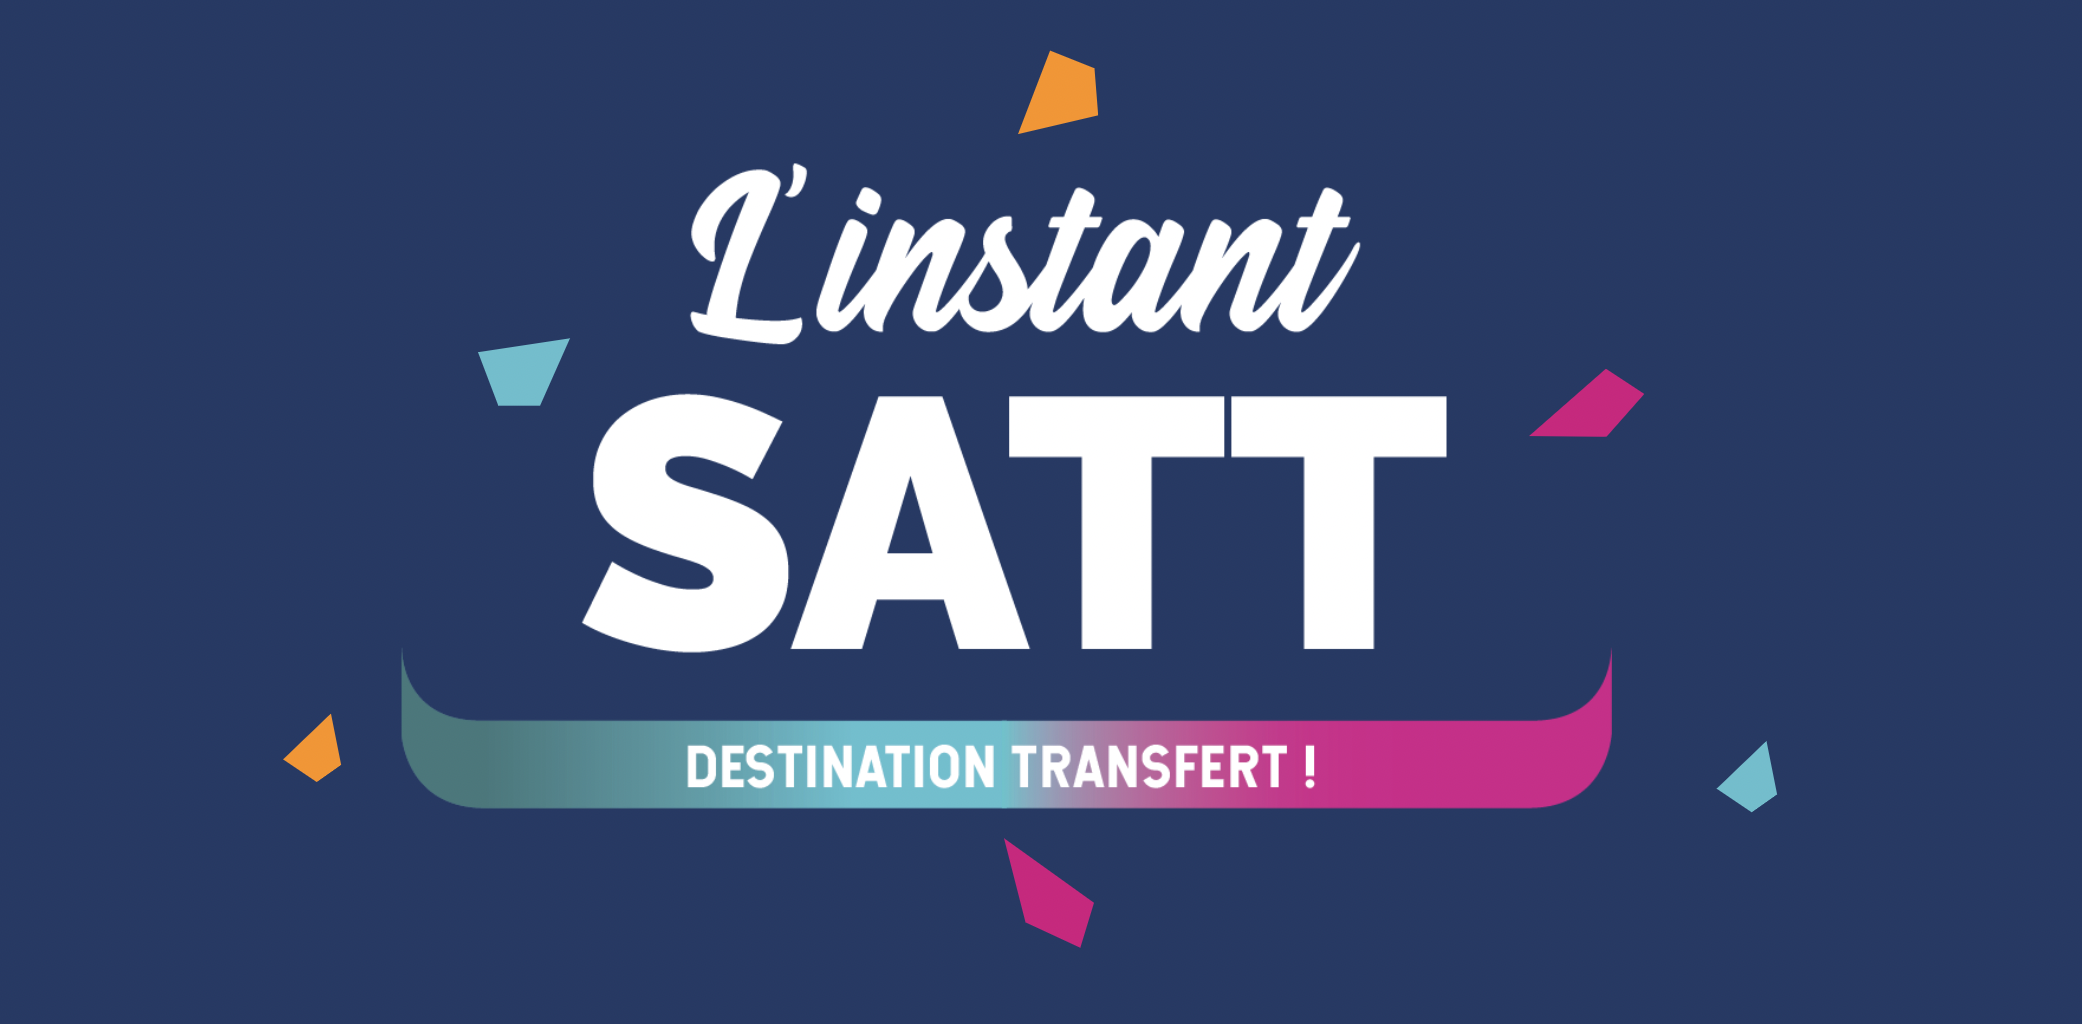 Instant SATT : destination transfert !